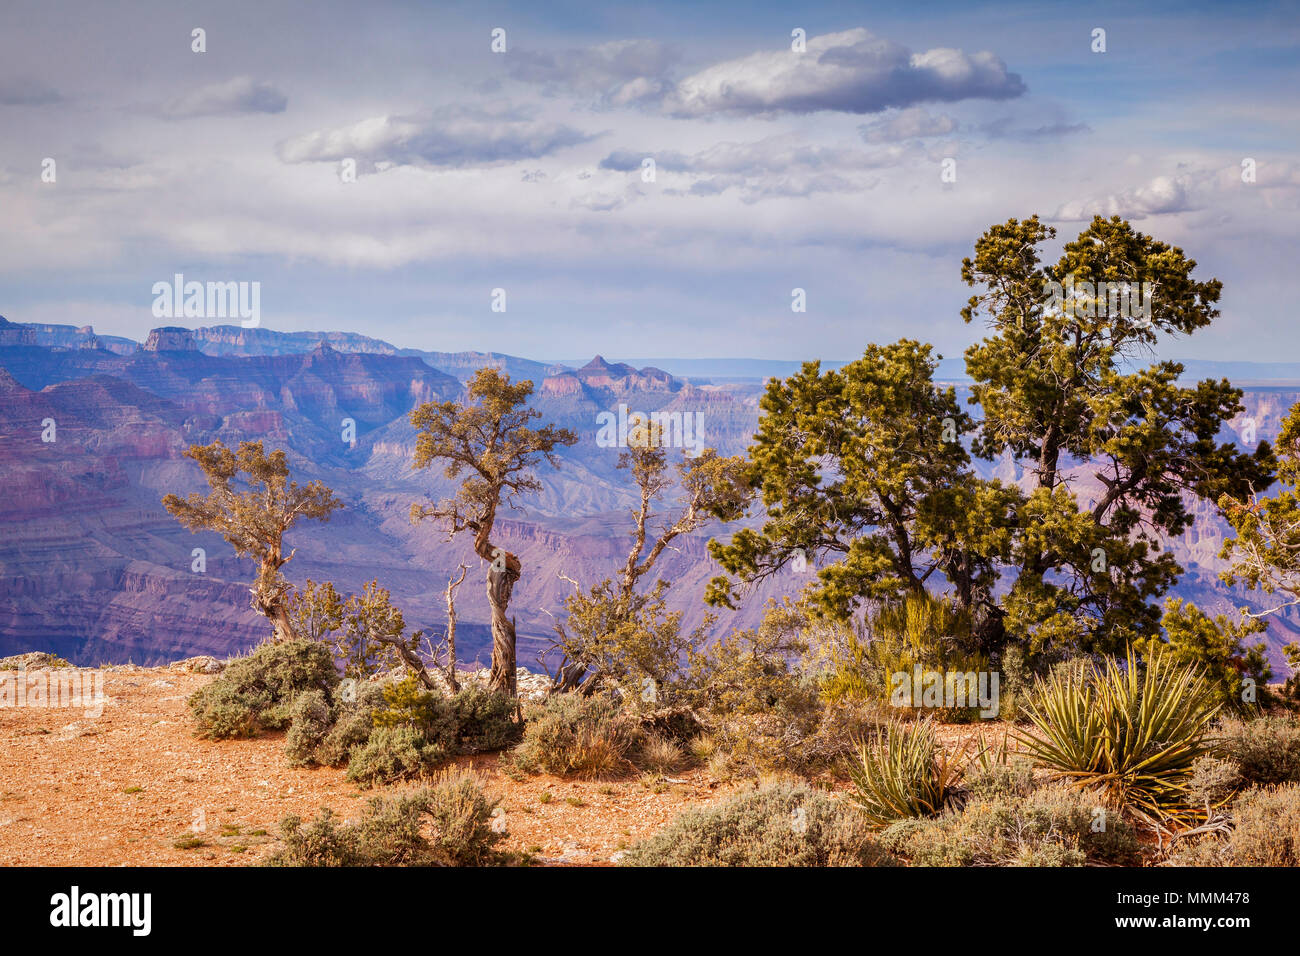 Alberi che crescono in vista del deserto, sul bordo sud del famoso Grand Canyon, Arizona, Stati Uniti. Foto Stock